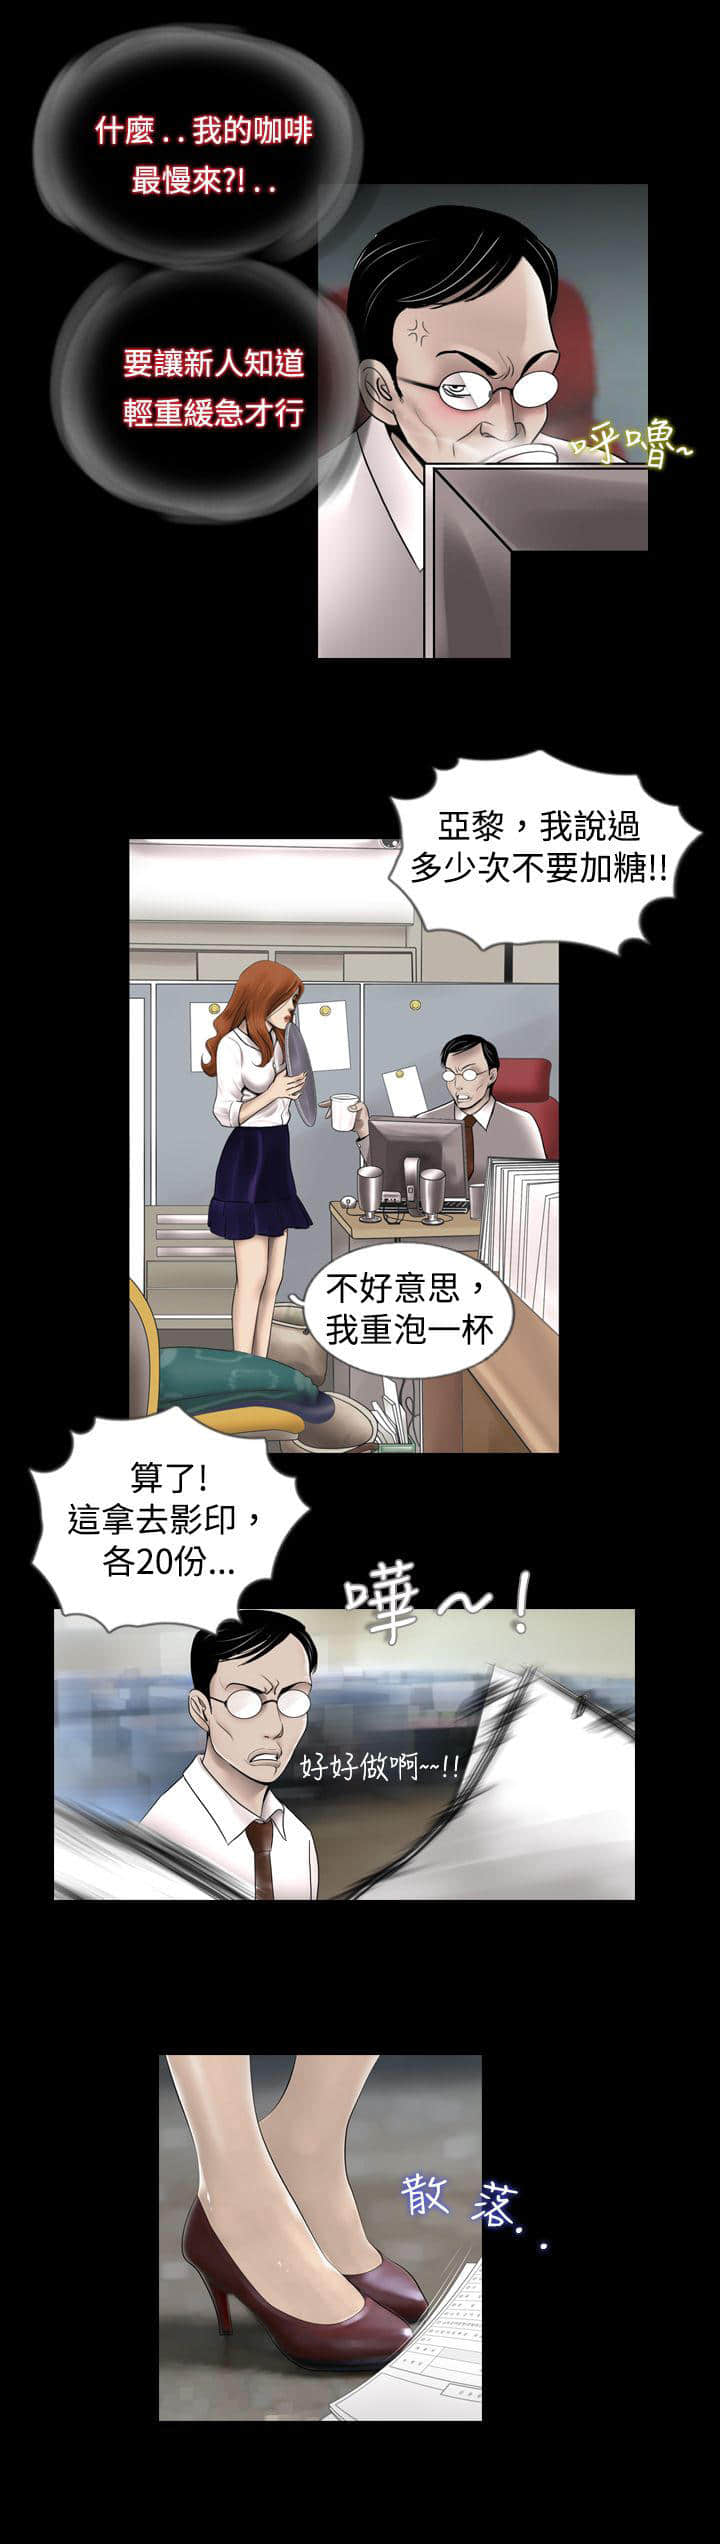 衣冠禽兽 完结版&【漫画】 全集免费阅读